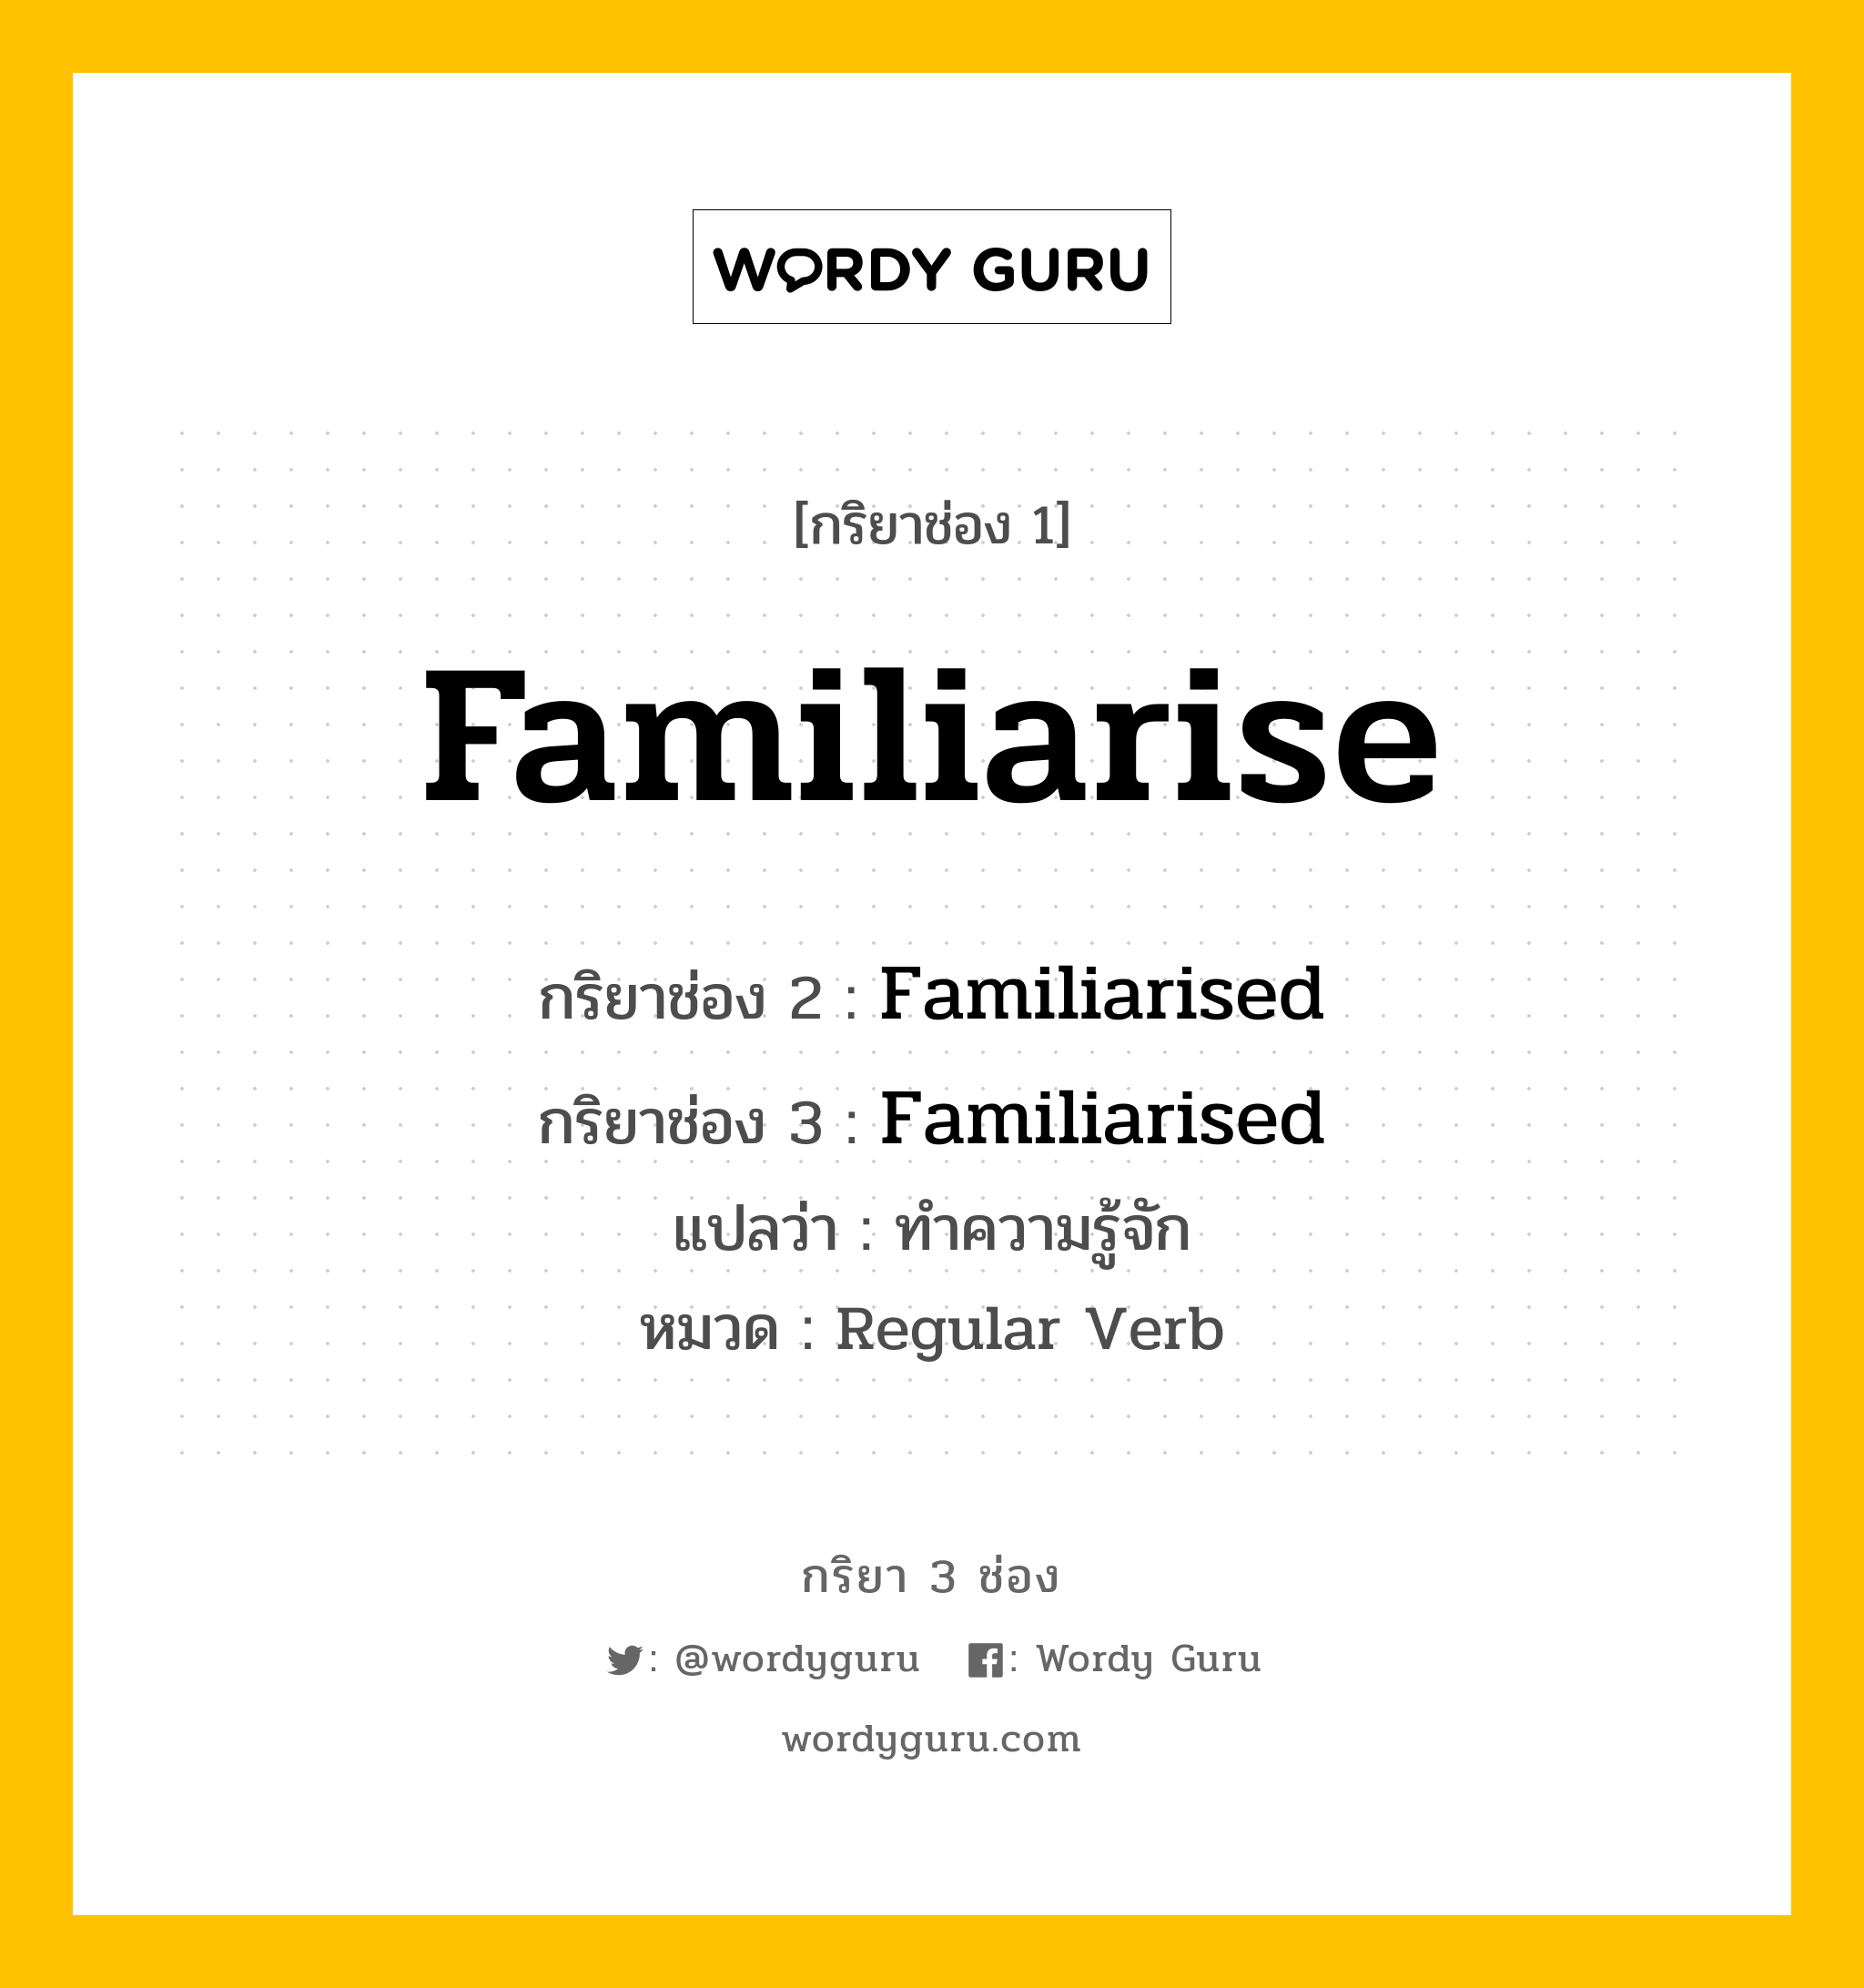 กริยา 3 ช่อง ของ Familiarise คืออะไร?, กริยาช่อง 1 Familiarise กริยาช่อง 2 Familiarised กริยาช่อง 3 Familiarised แปลว่า ทำความรู้จัก หมวด Regular Verb หมวด Regular Verb